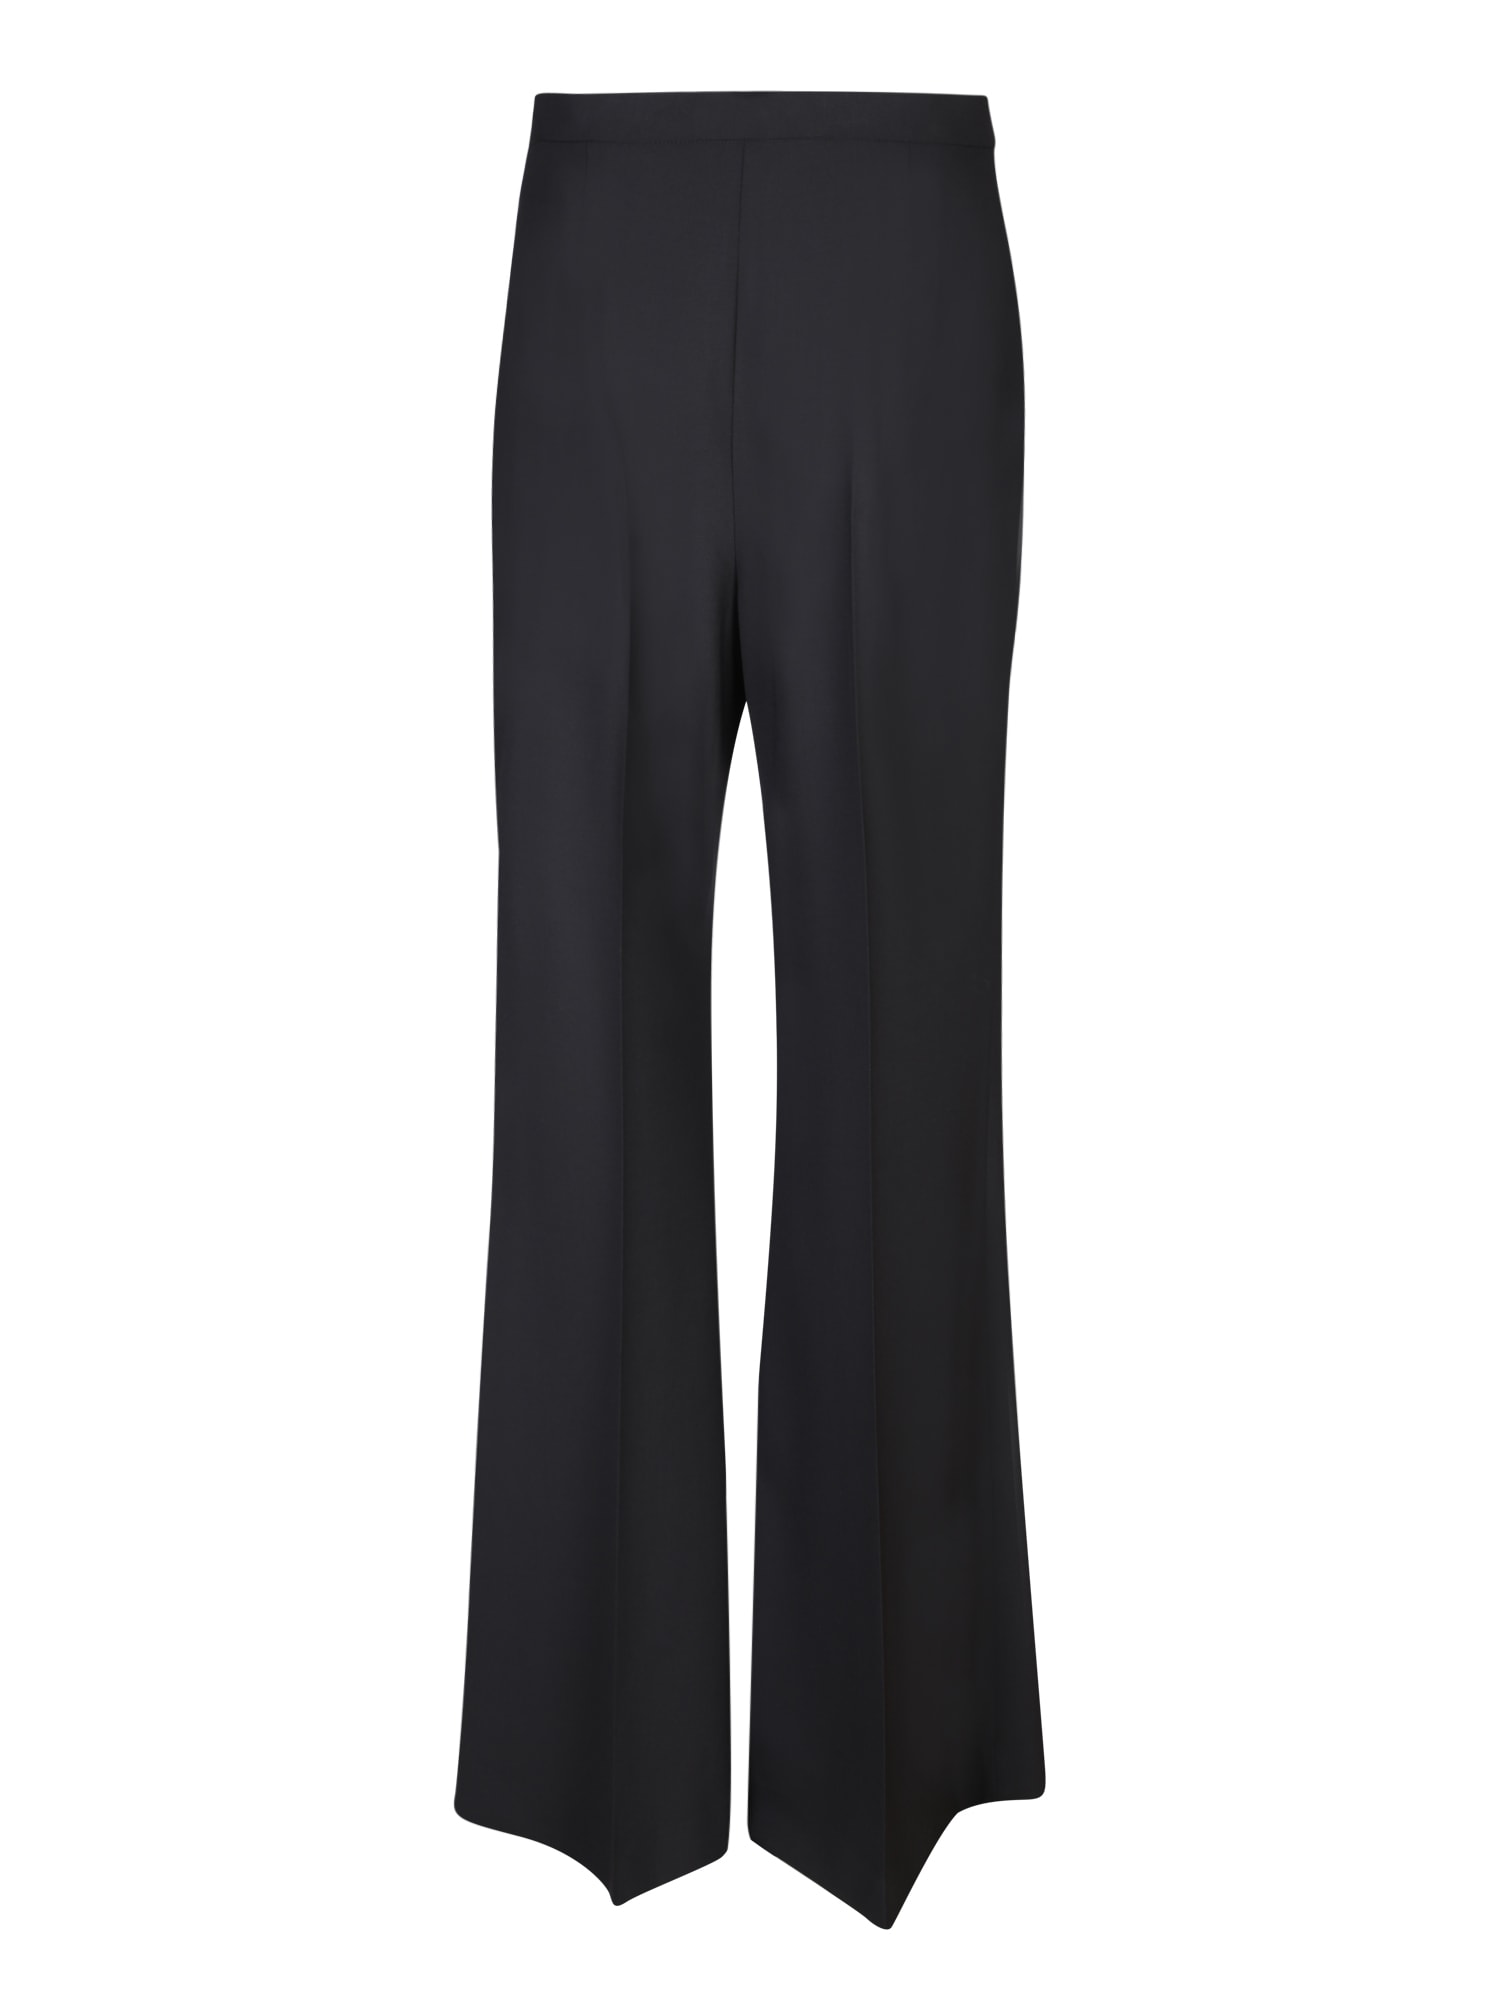 Shop Lardini Black Tailored Trousers